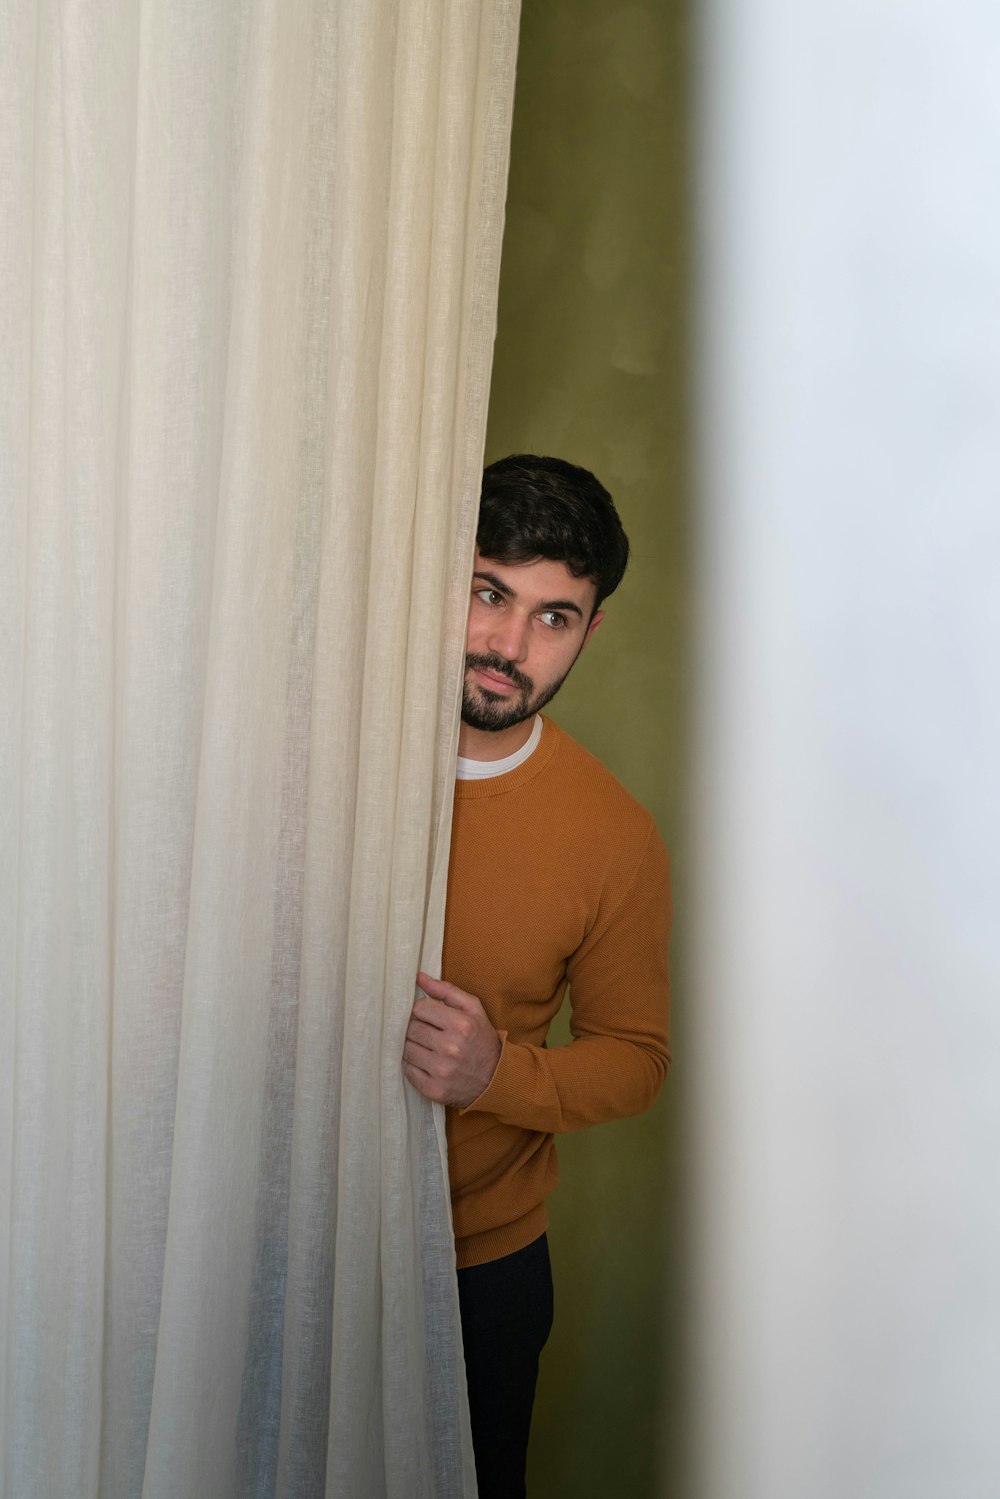 Ein Mann lugt hinter einem Vorhang hervor